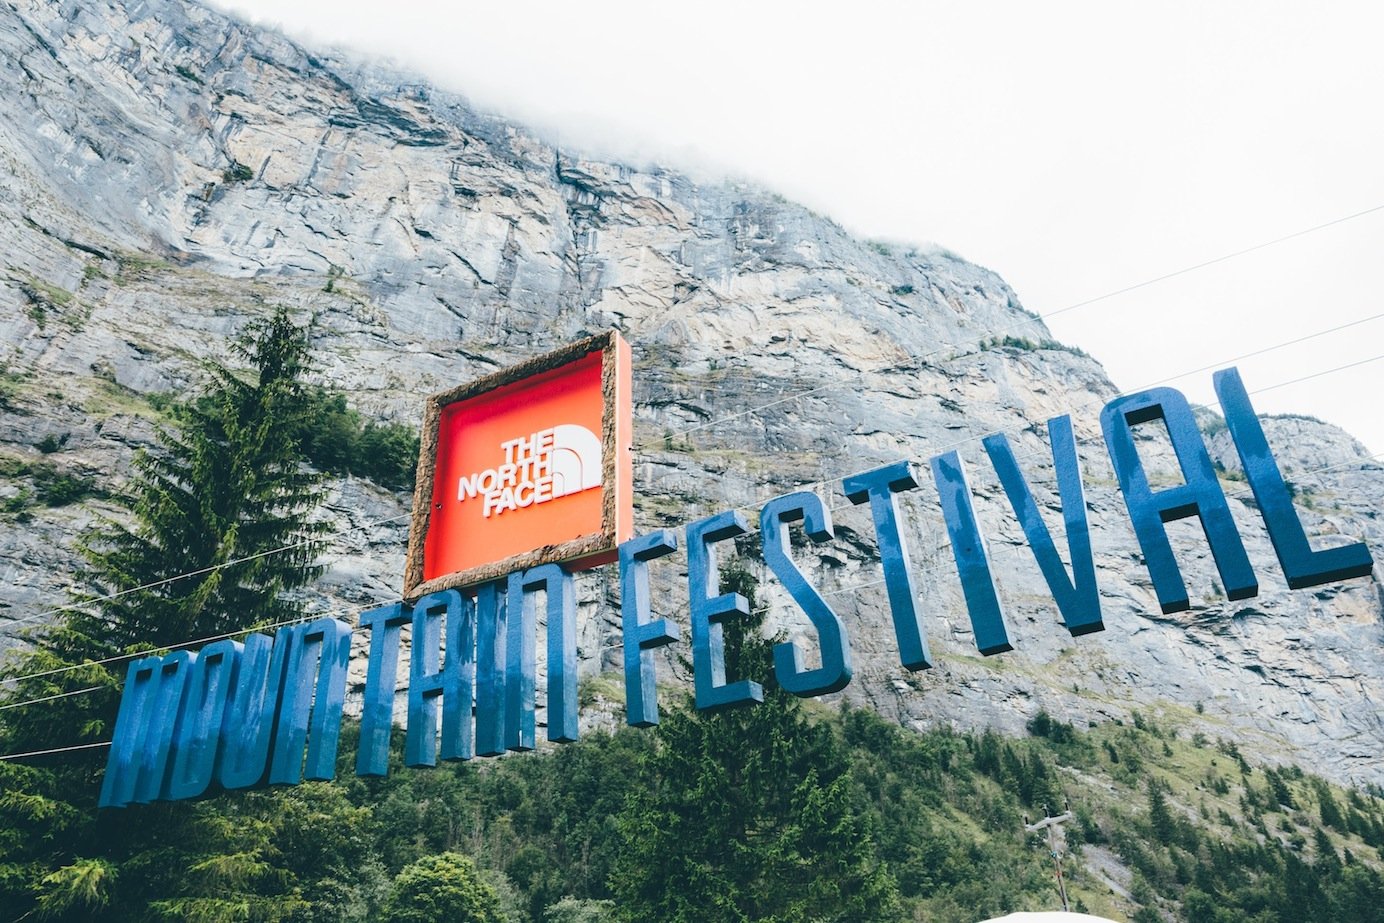 Event – The North Face Mountain Festival 2016: Ultimatives Abenteuer-Wochenende vor spektakulärer Naturkulisse am Eiger